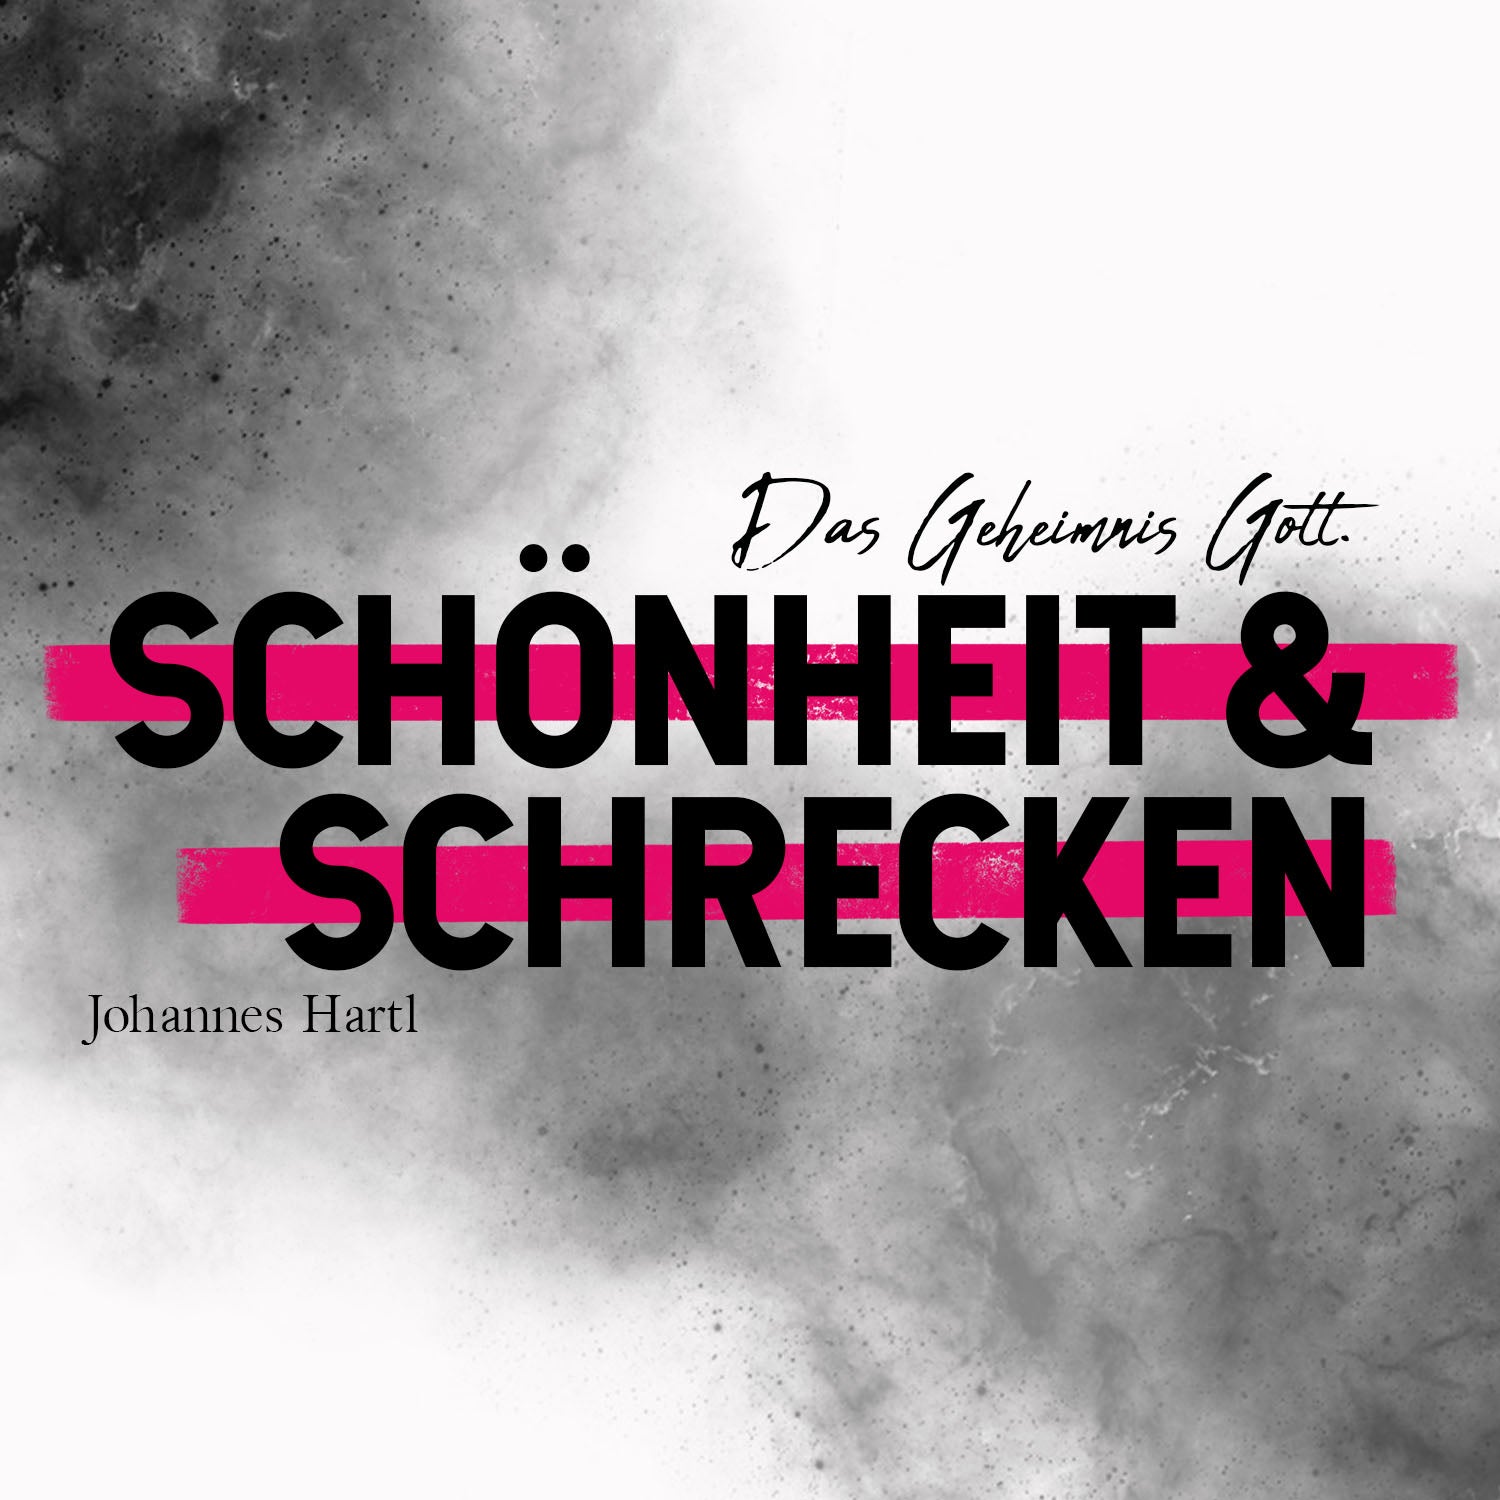 2018-03-15-Schoenheit-und-Schrecken-Das-Geheimnis-Gott-1500x1500_shop.jpg